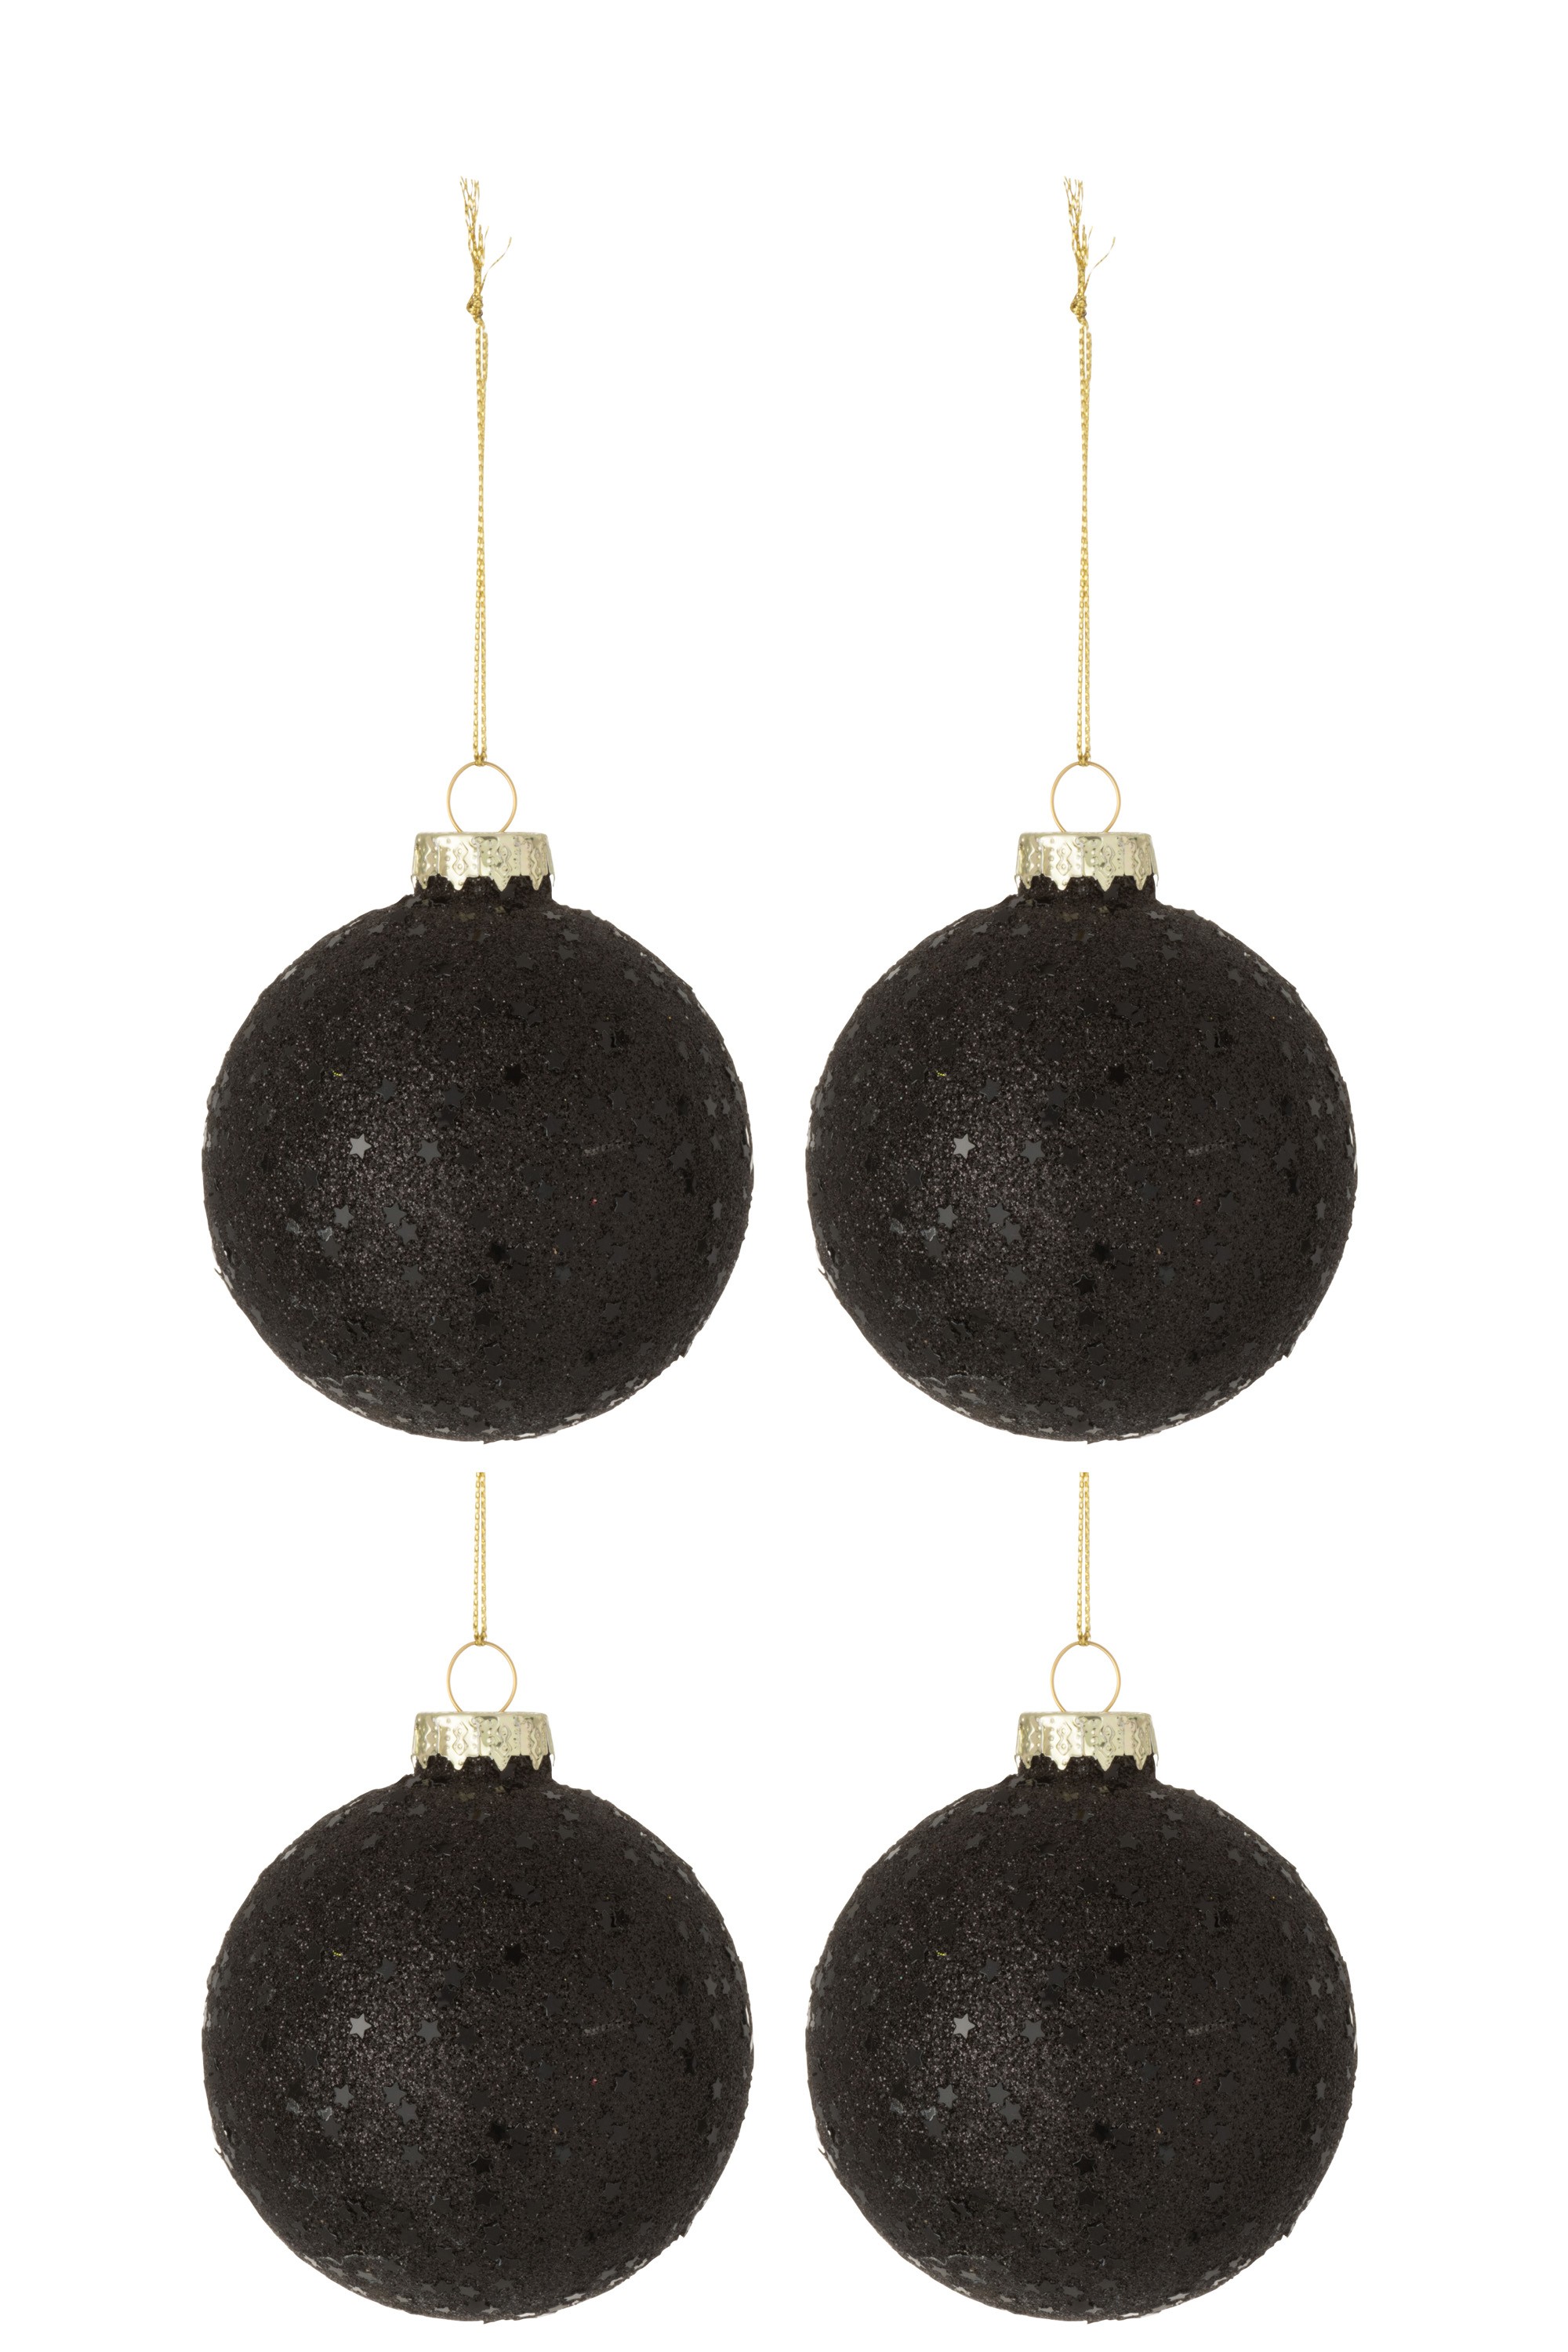 4ks černé vánoční koule  Baubles stars black  – Ø 10cm J-Line by Jolipa